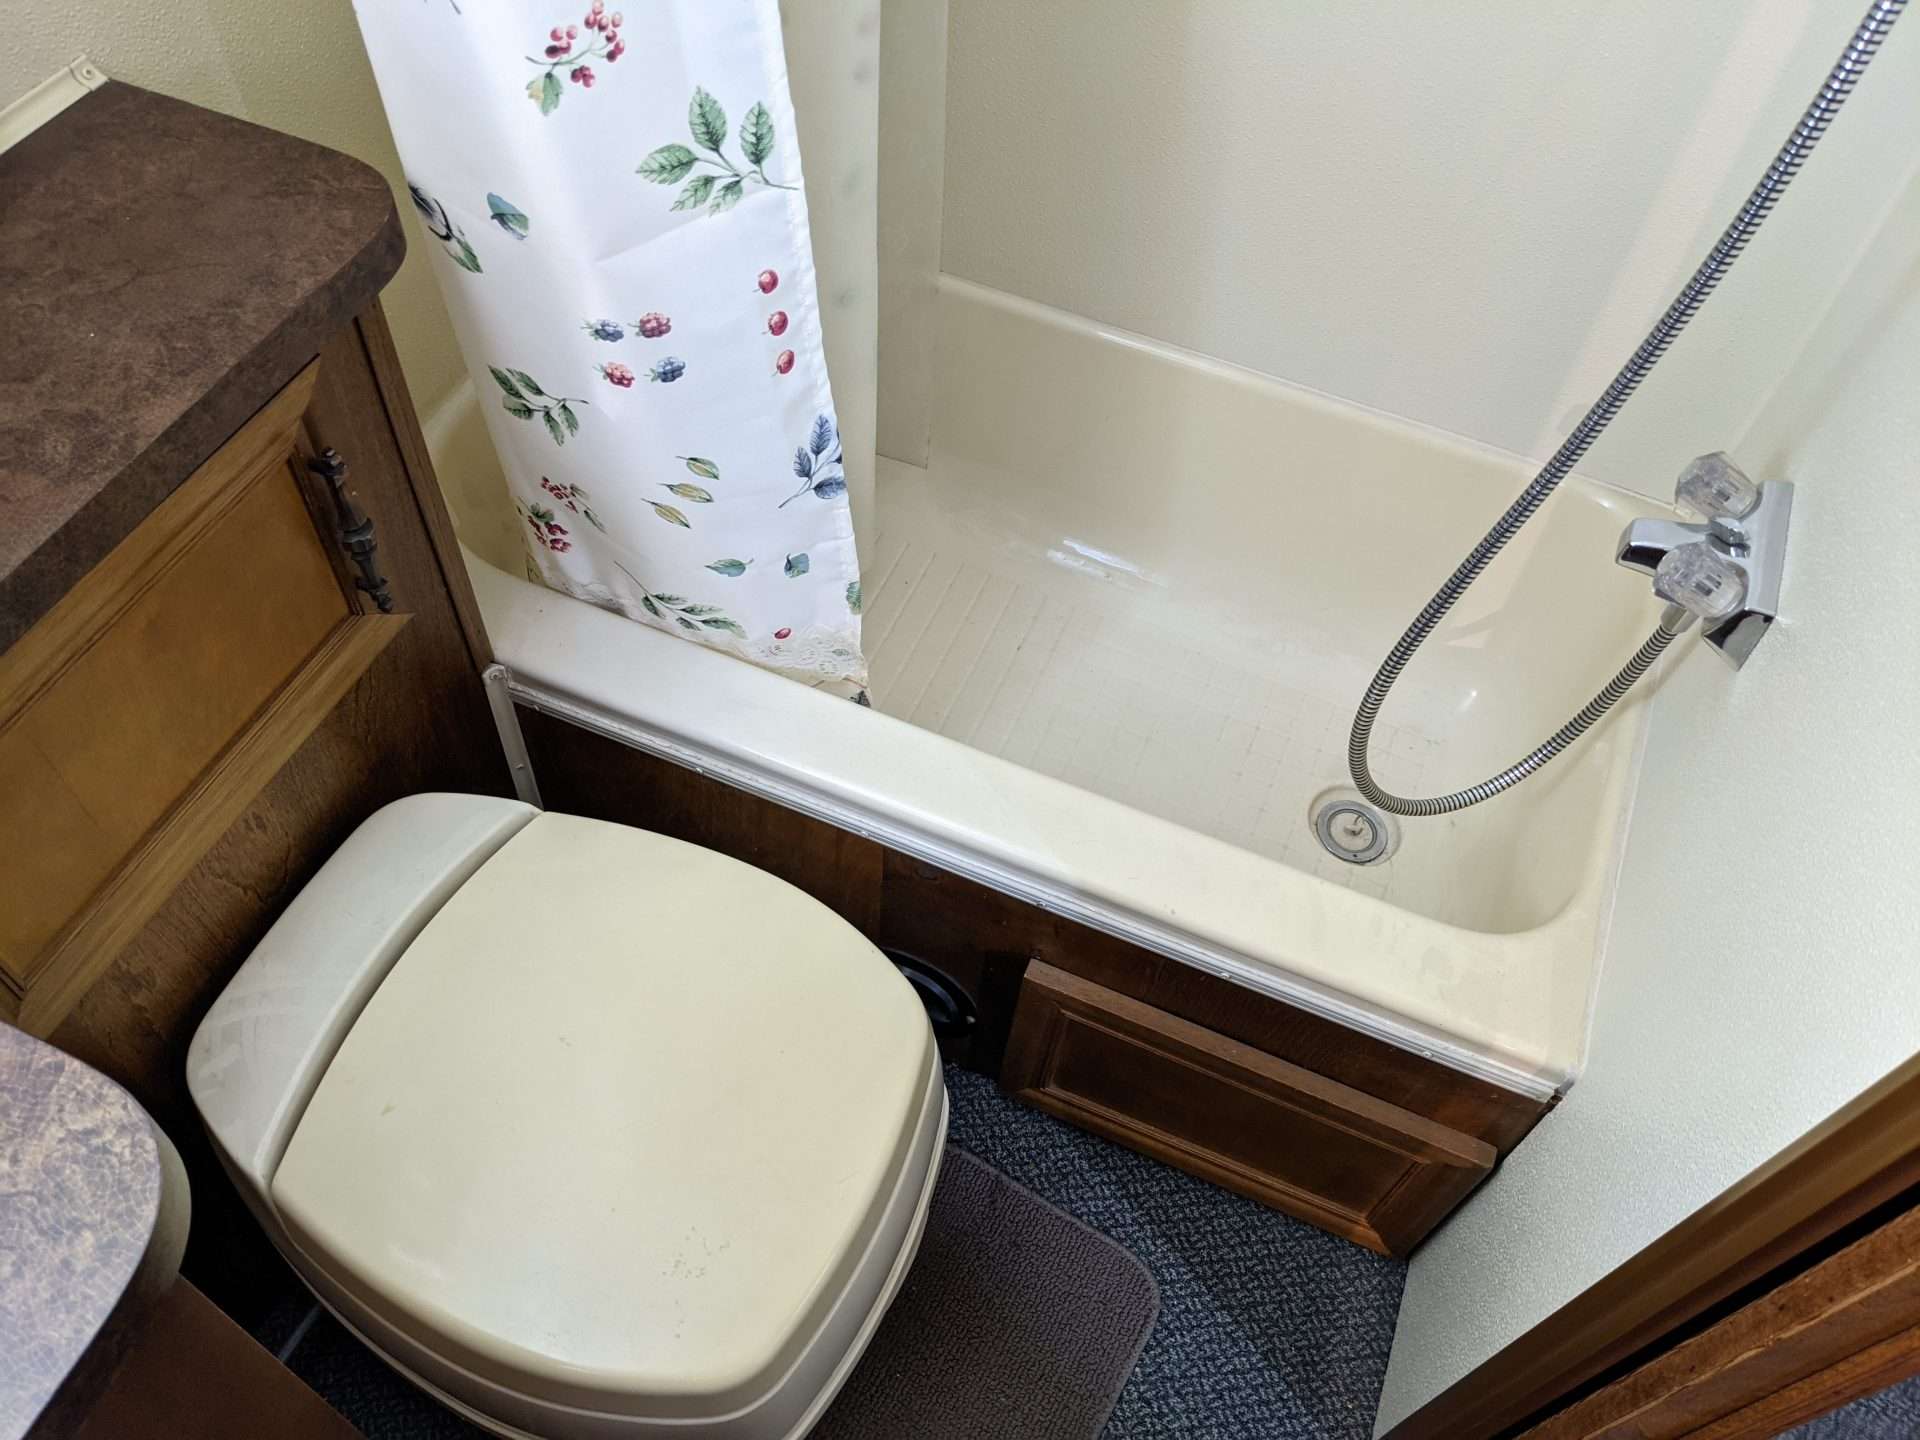 RV bathroom with bathtub installed